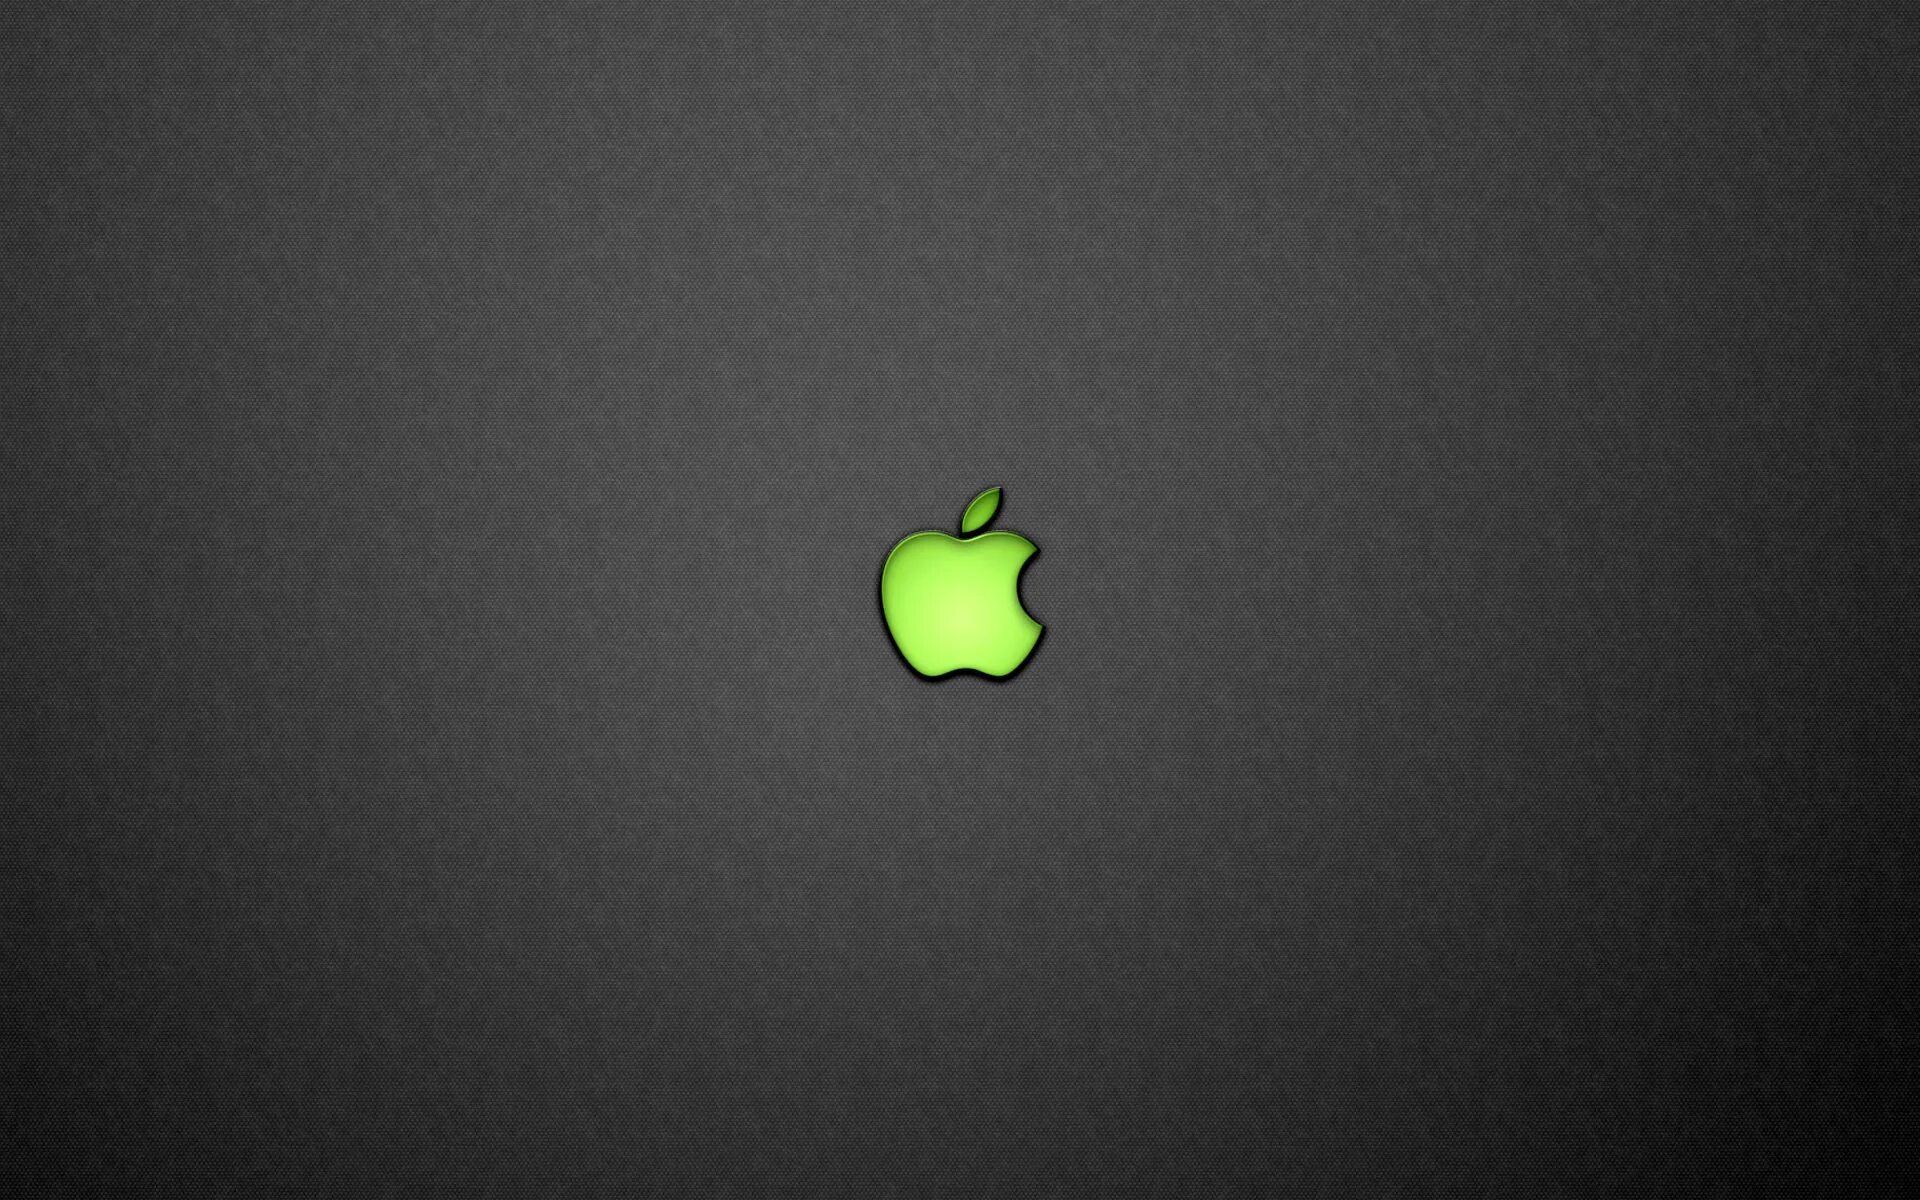 Обои на айфон яблоко. Рабочий стол Apple. Фон Apple. Заставка на рабочий стол Apple. Яблоко на темном фоне.